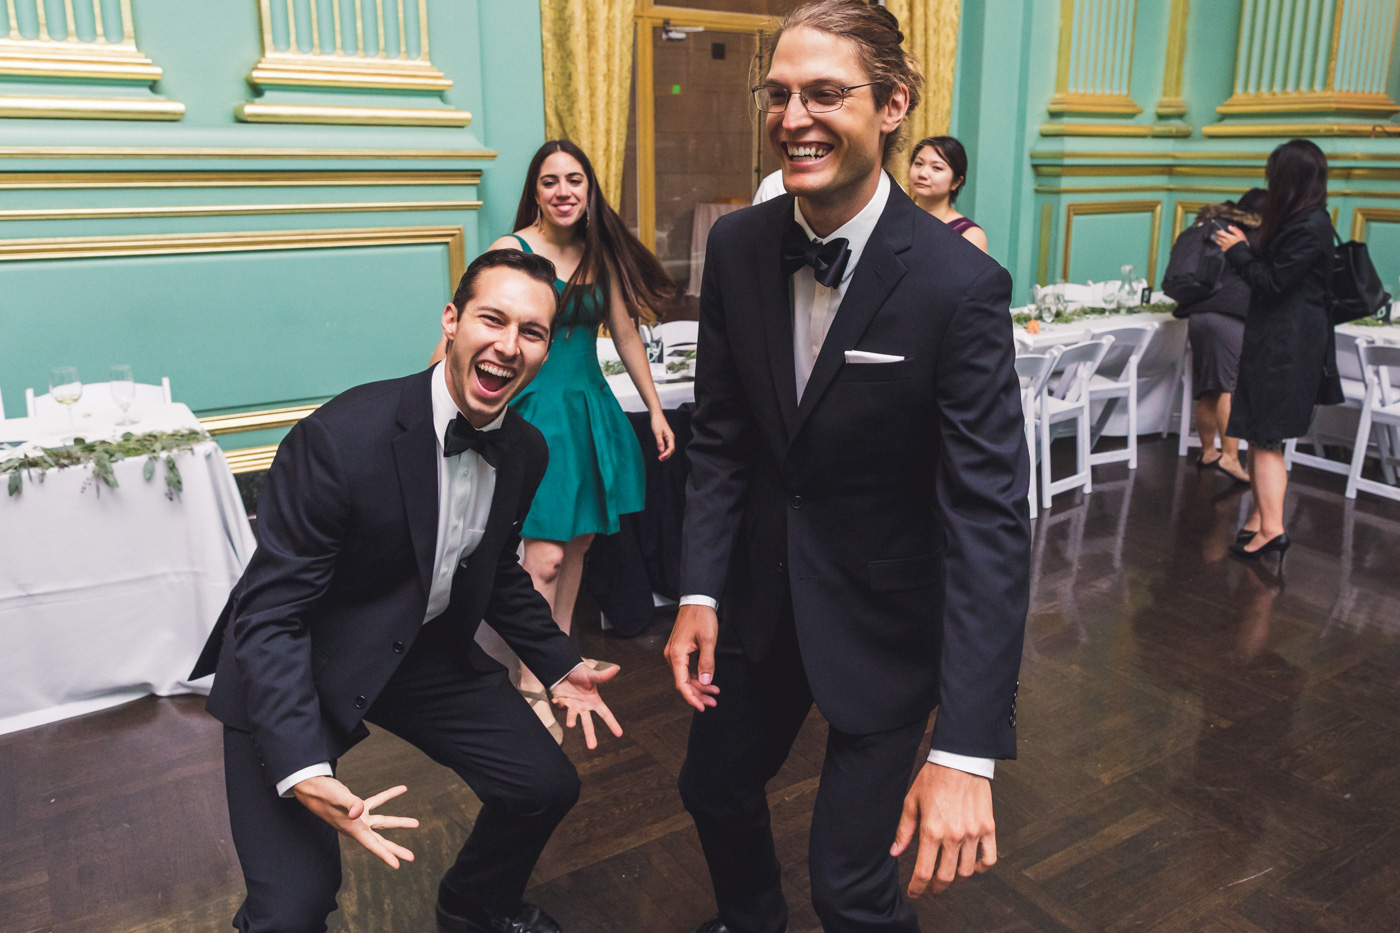 groomsmen-dancing-green-room-wedding-reception